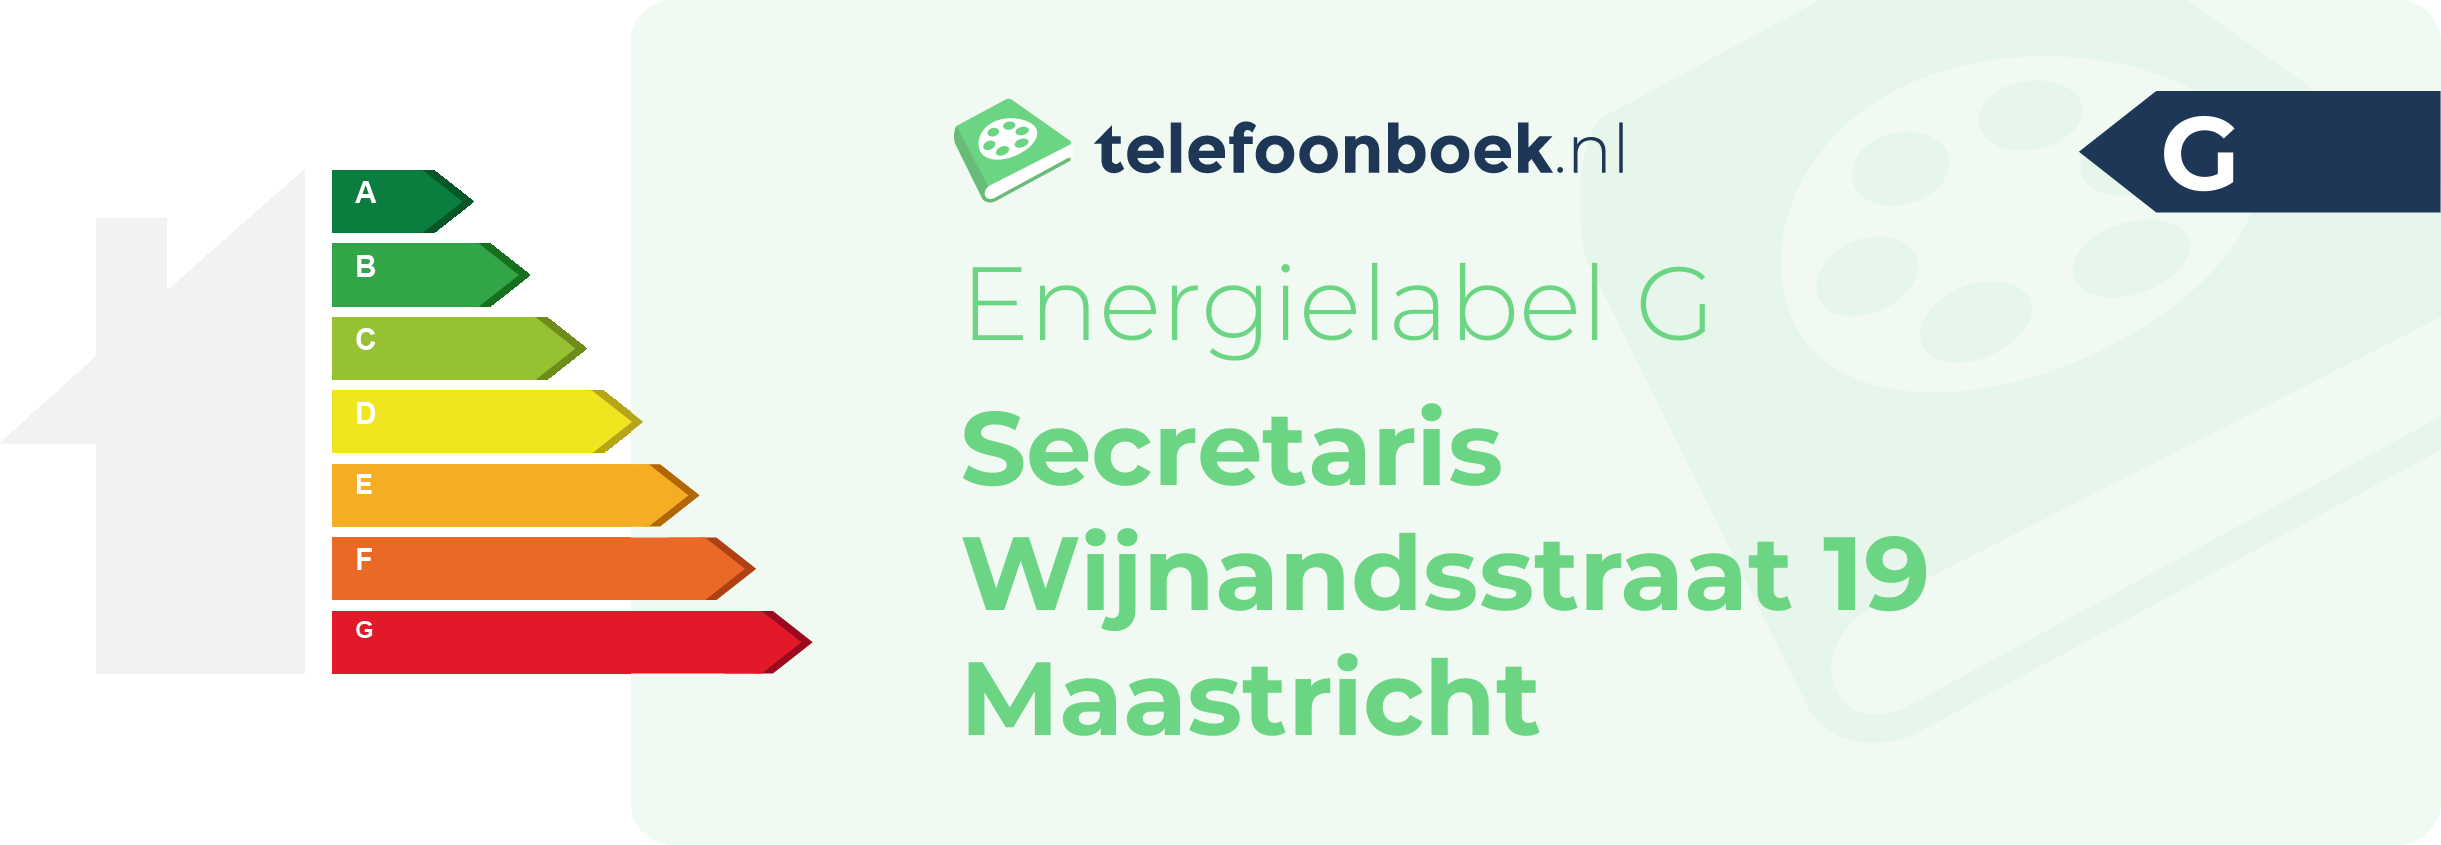 Energielabel Secretaris Wijnandsstraat 19 Maastricht